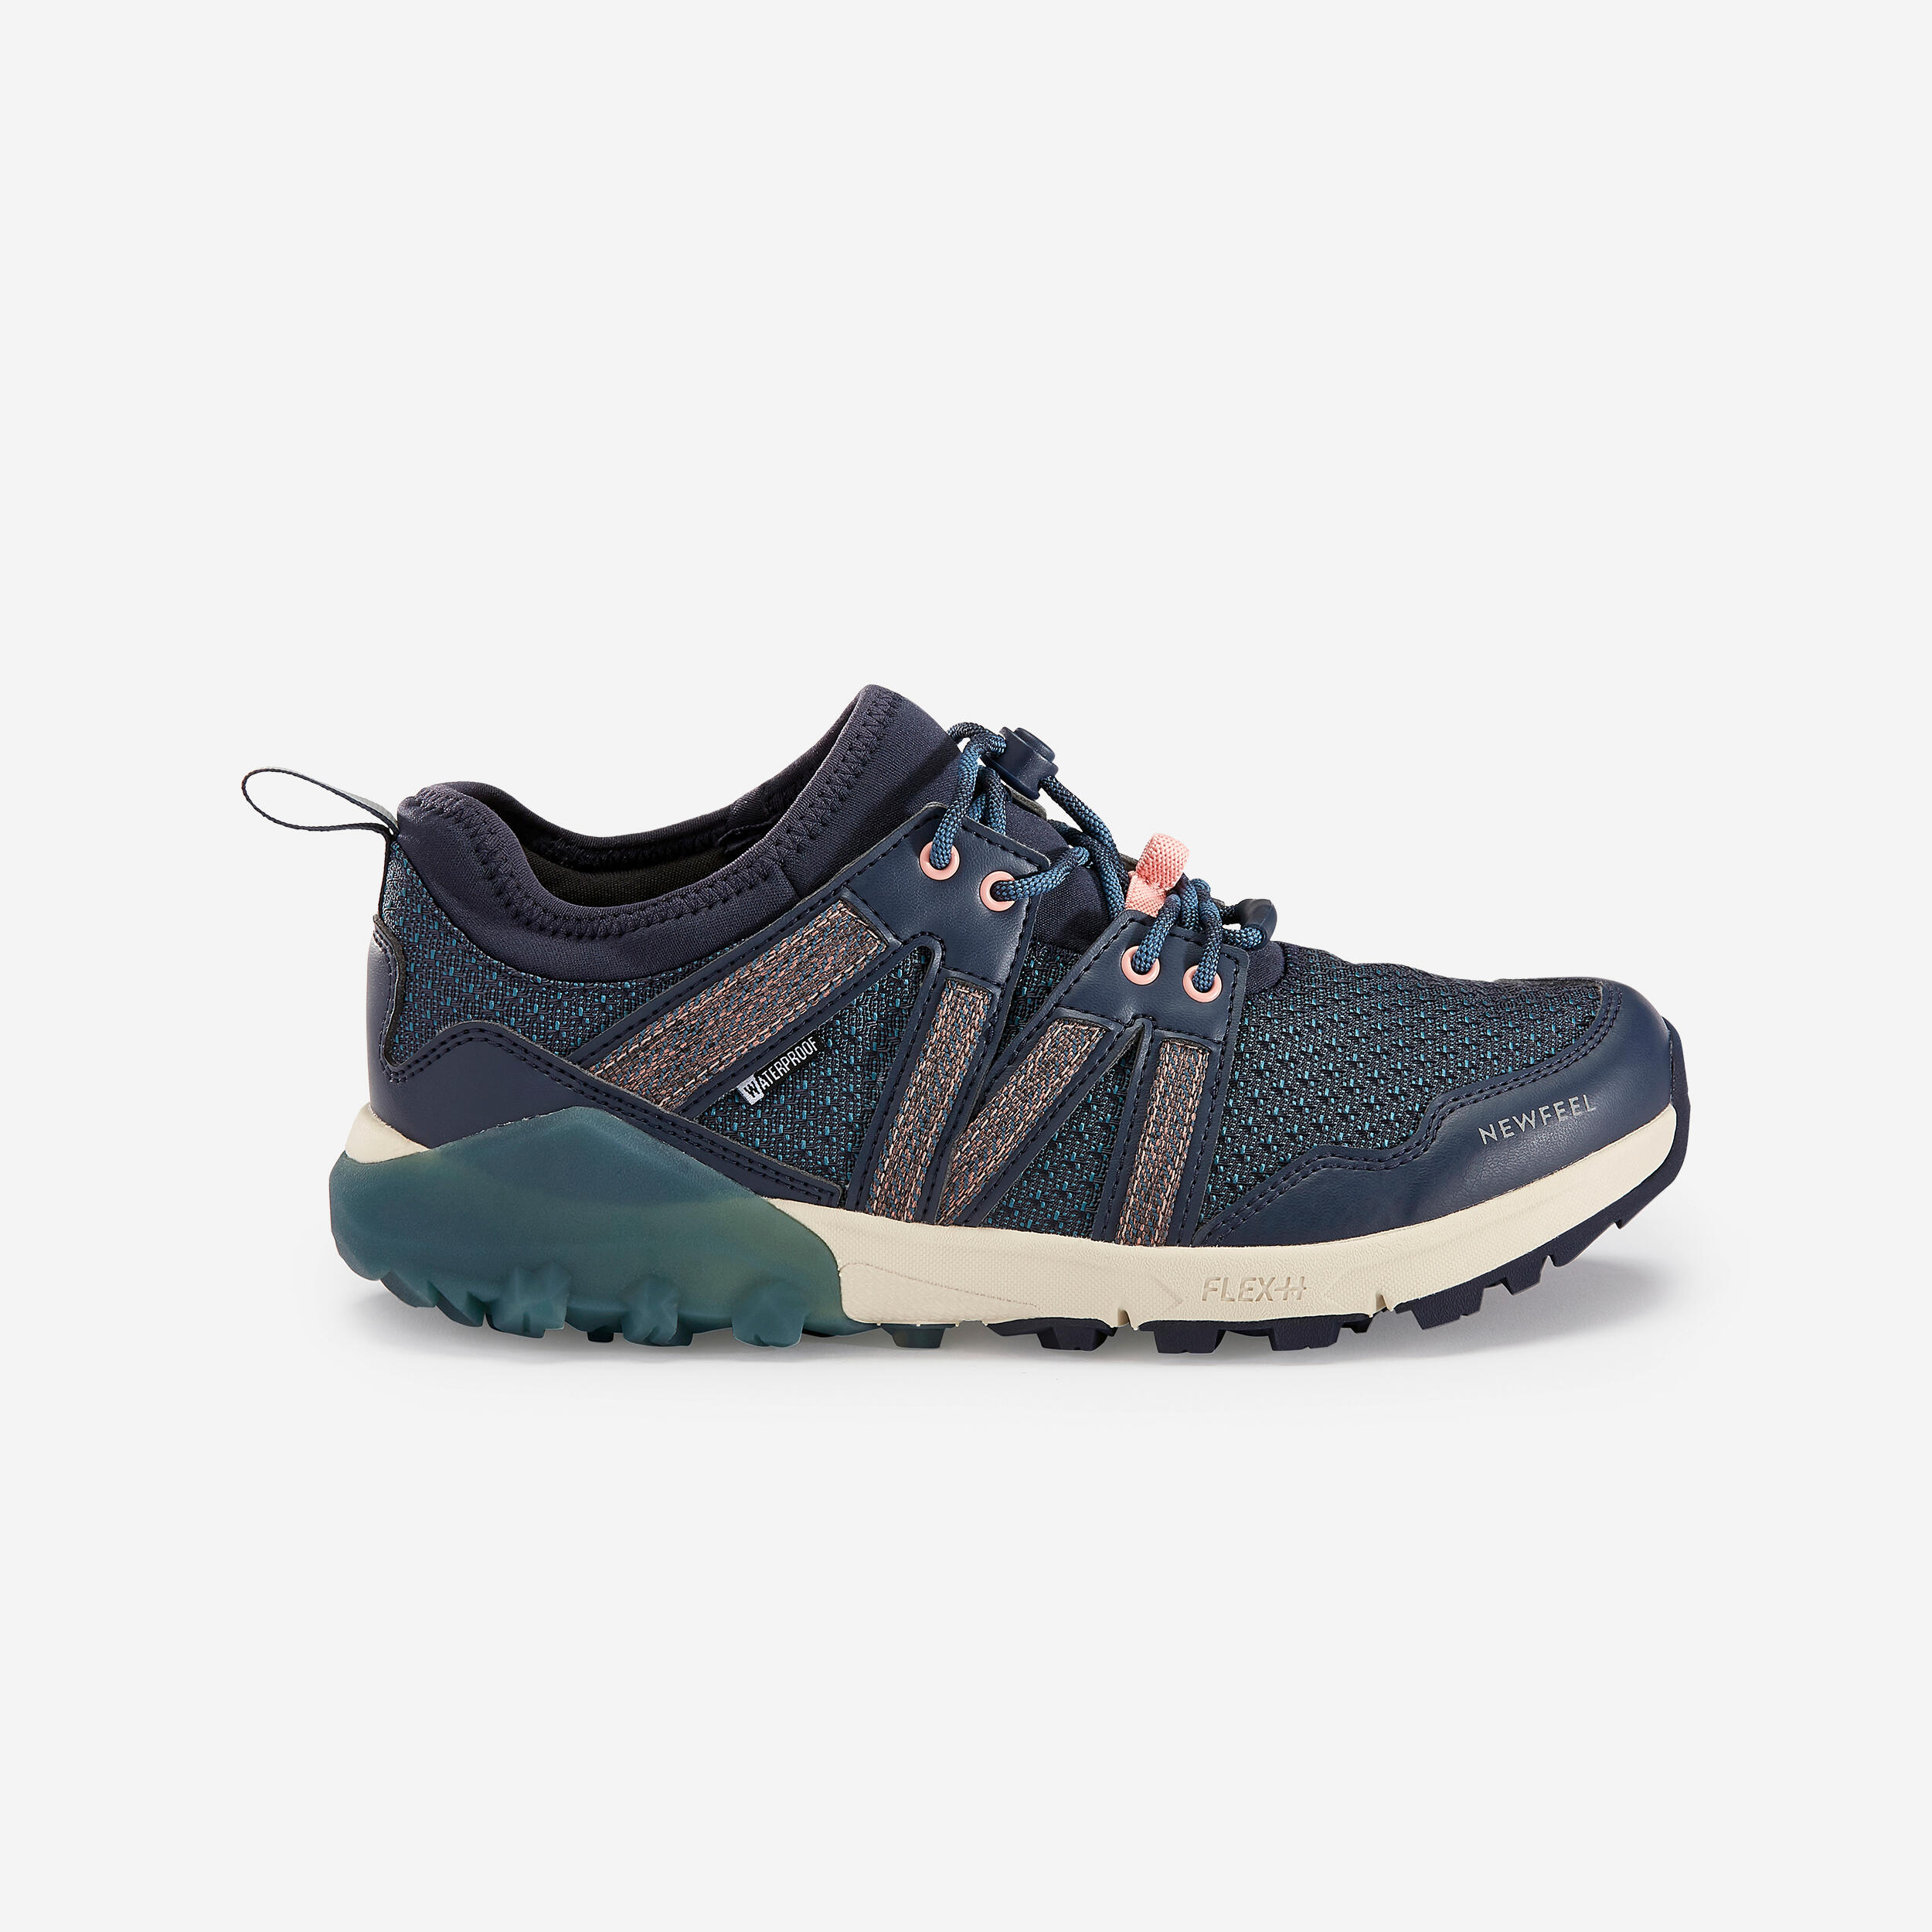 NW 580 Nordic Walking Waterproof Shoes - Blue 13/16